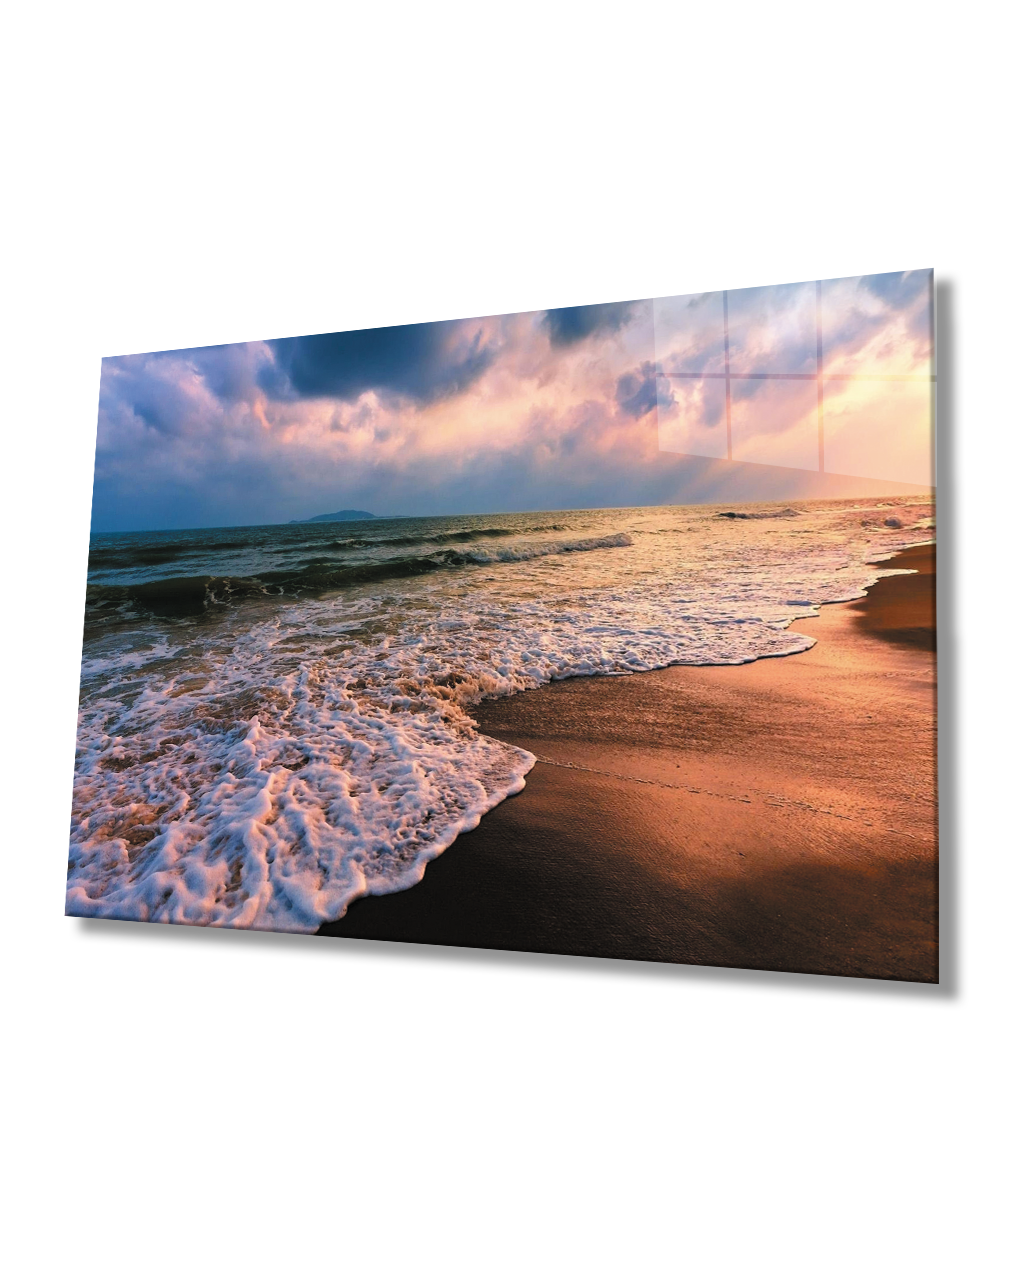 Gün Batımı Deniz Sahil Dalga Manzaralı Cam Tablo  4mm Dayanıklı Temperli Cam Sunset Sea Beach Wave View Glass Table 4mm Durable Tempered Glass